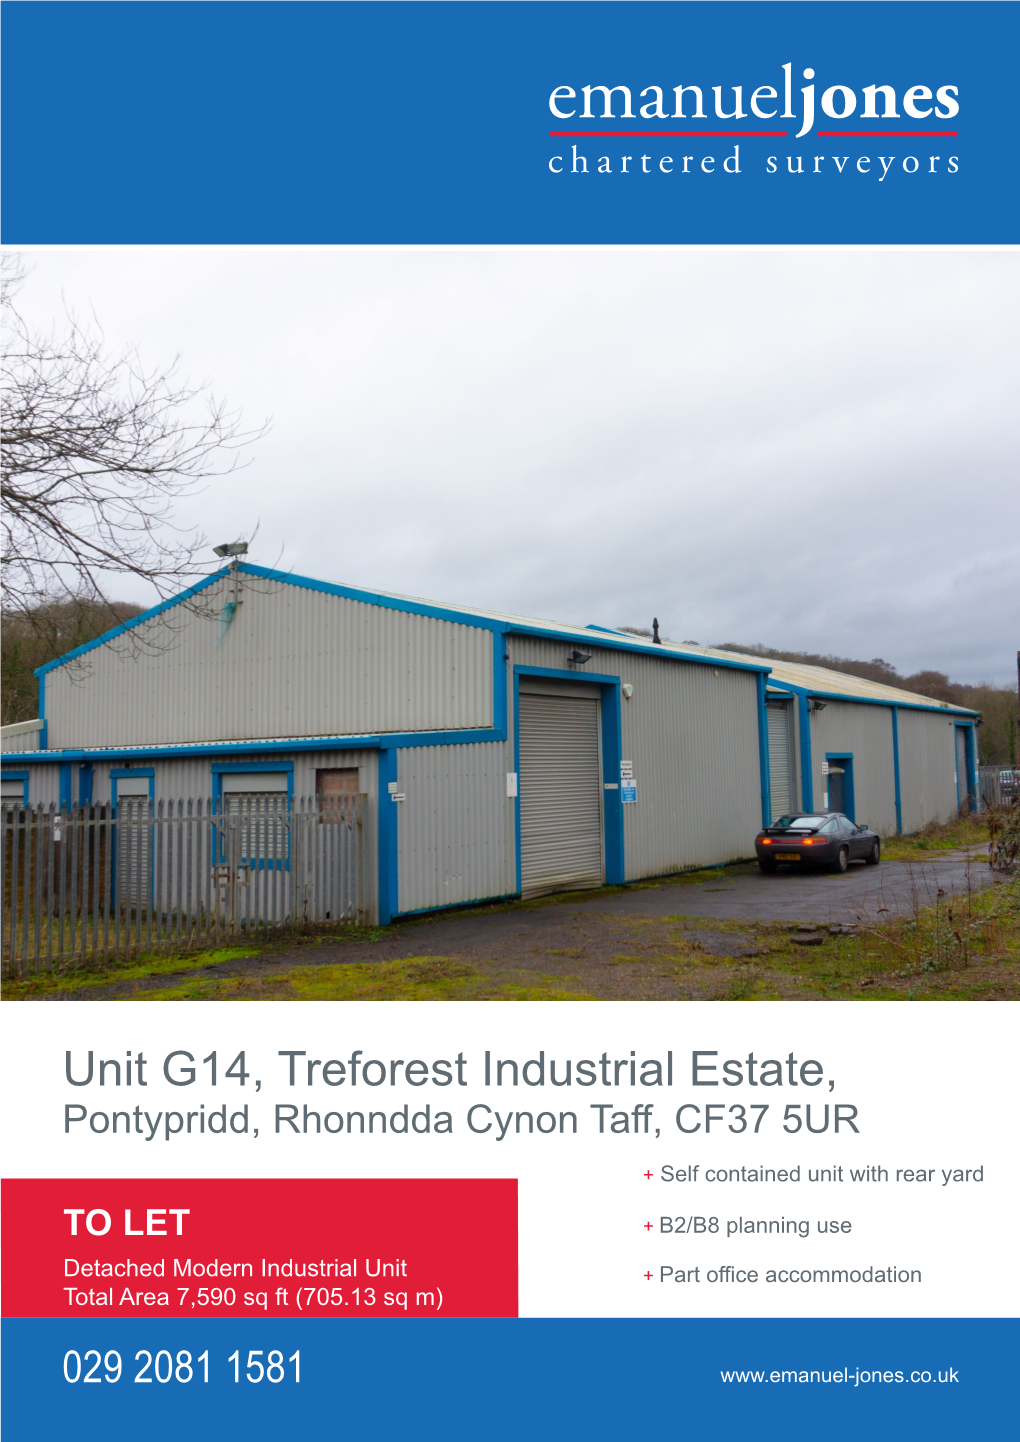 Unit G14, Treforest Industrial Estate, Pontypridd, Rhonndda Cynon Taff, CF37 5UR